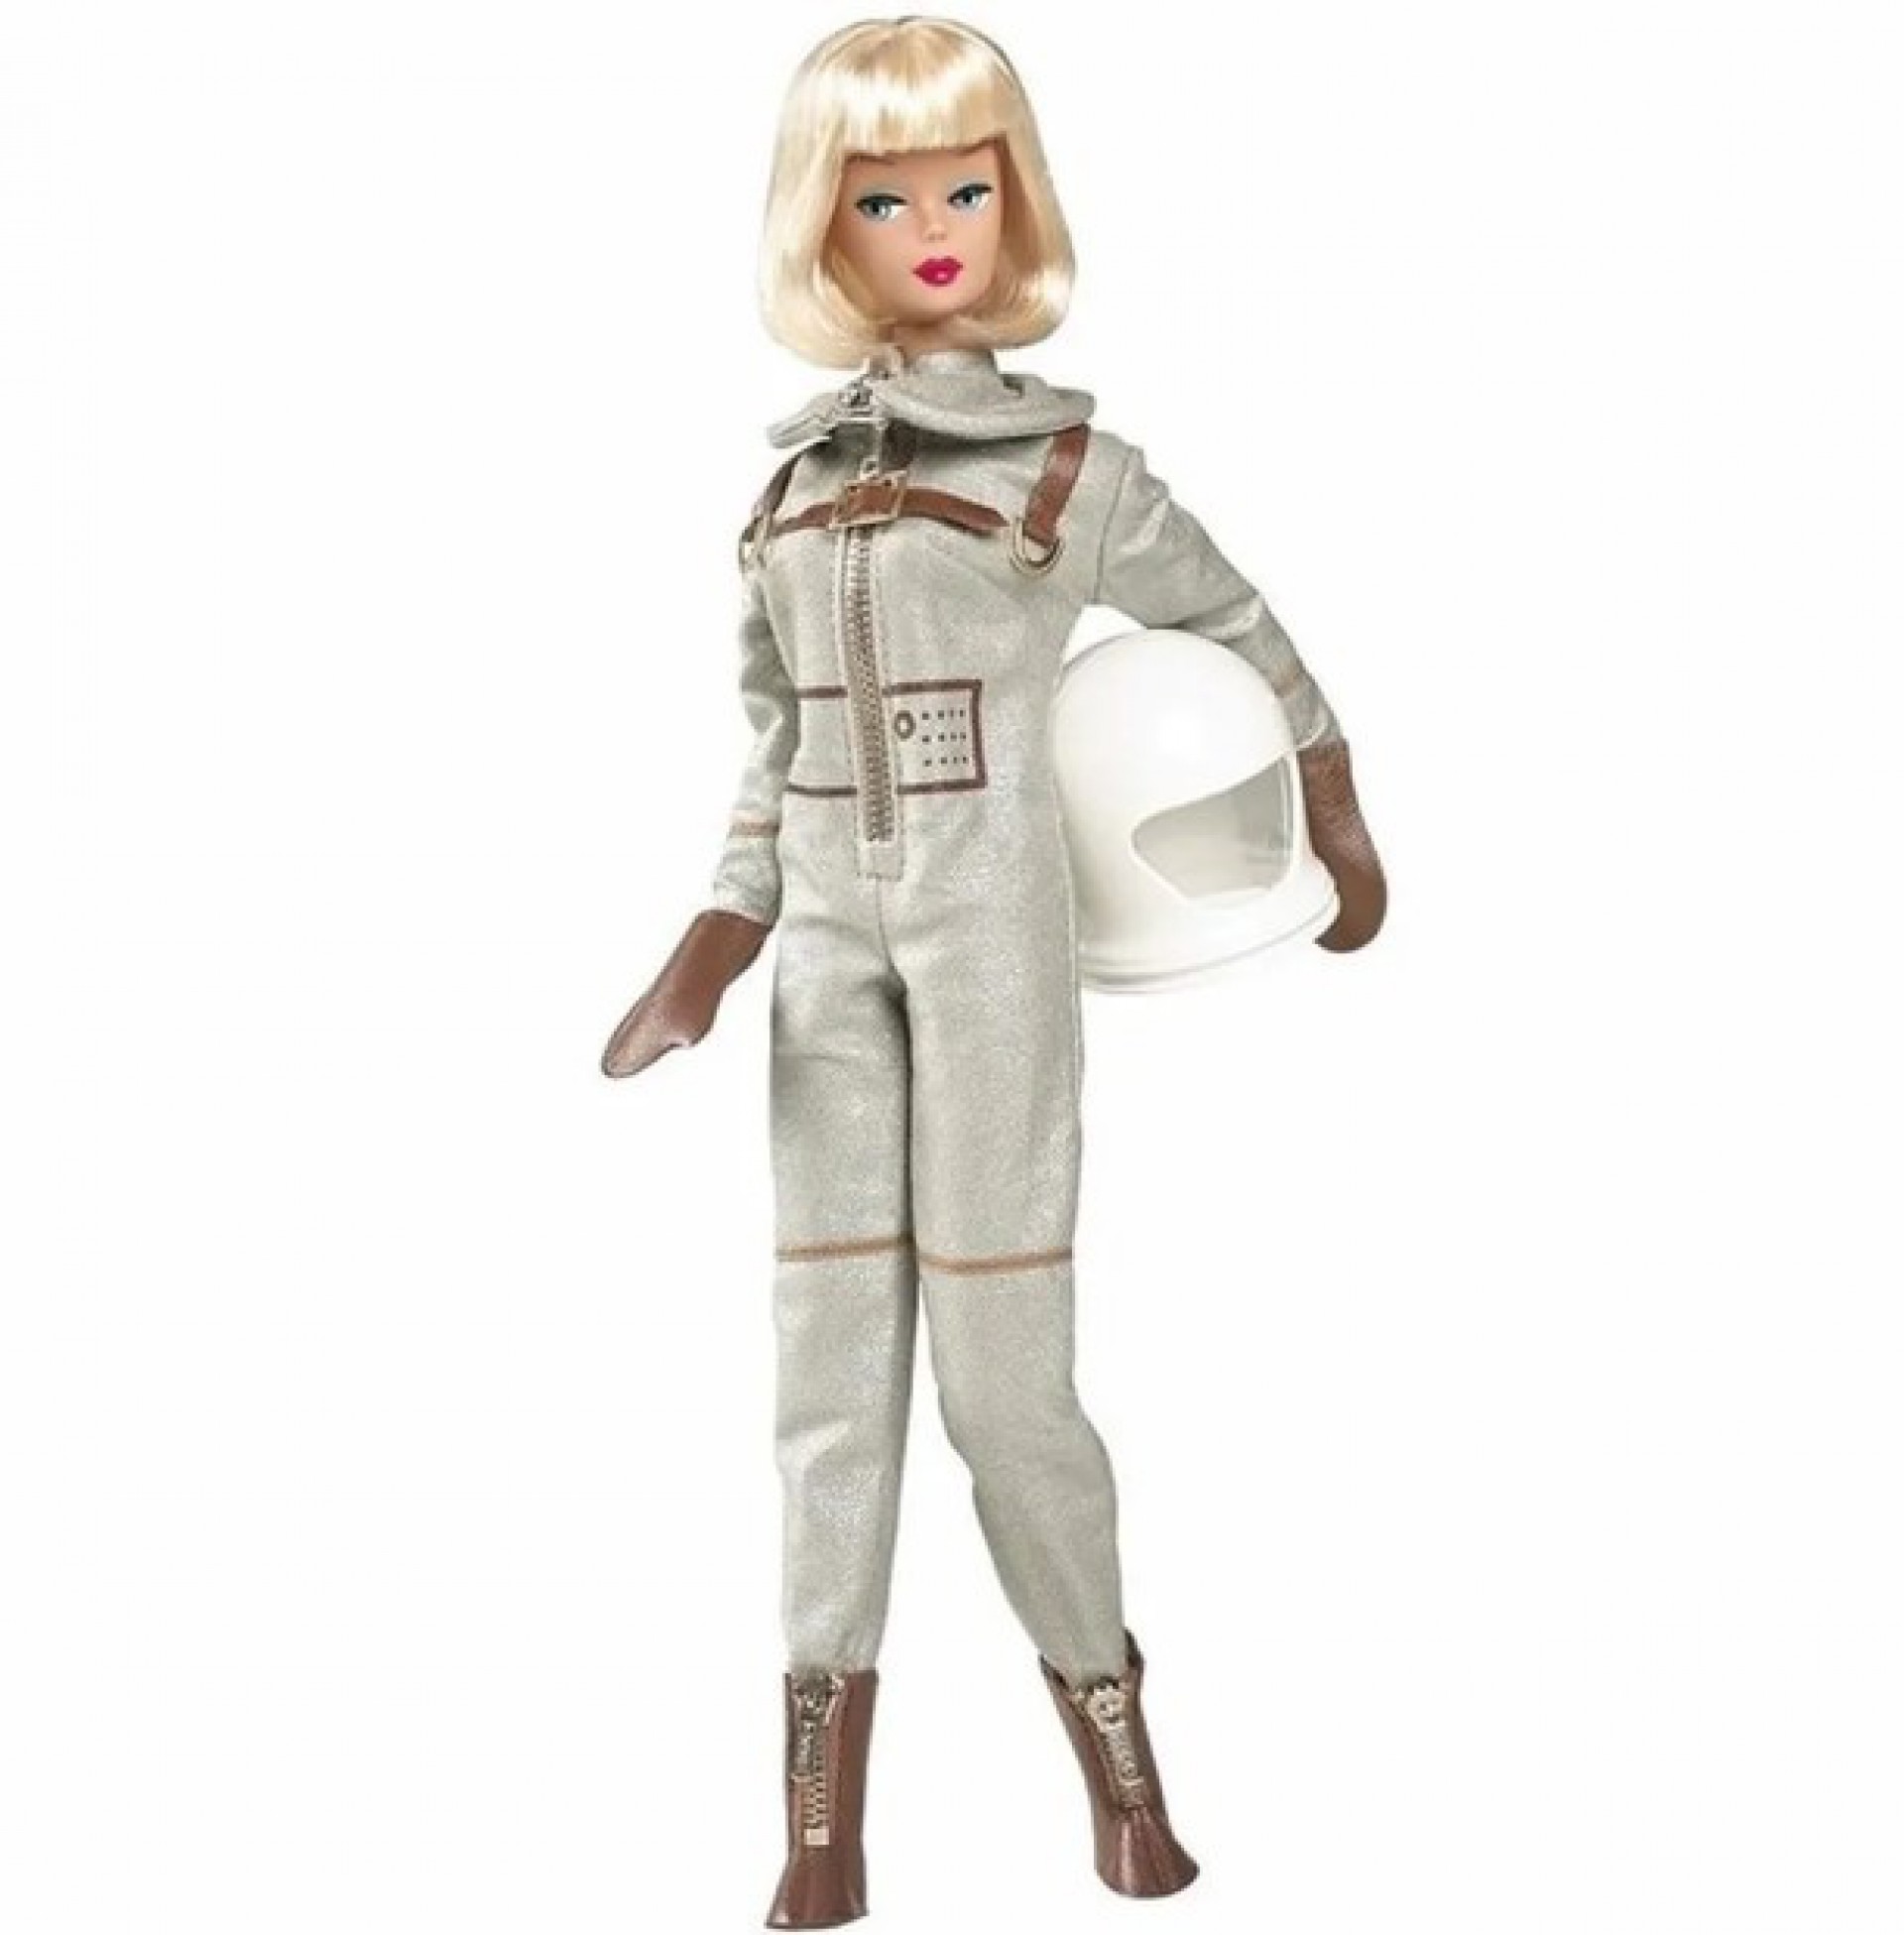 Conheça curiosidades e a história da boneca e do filme Barbie